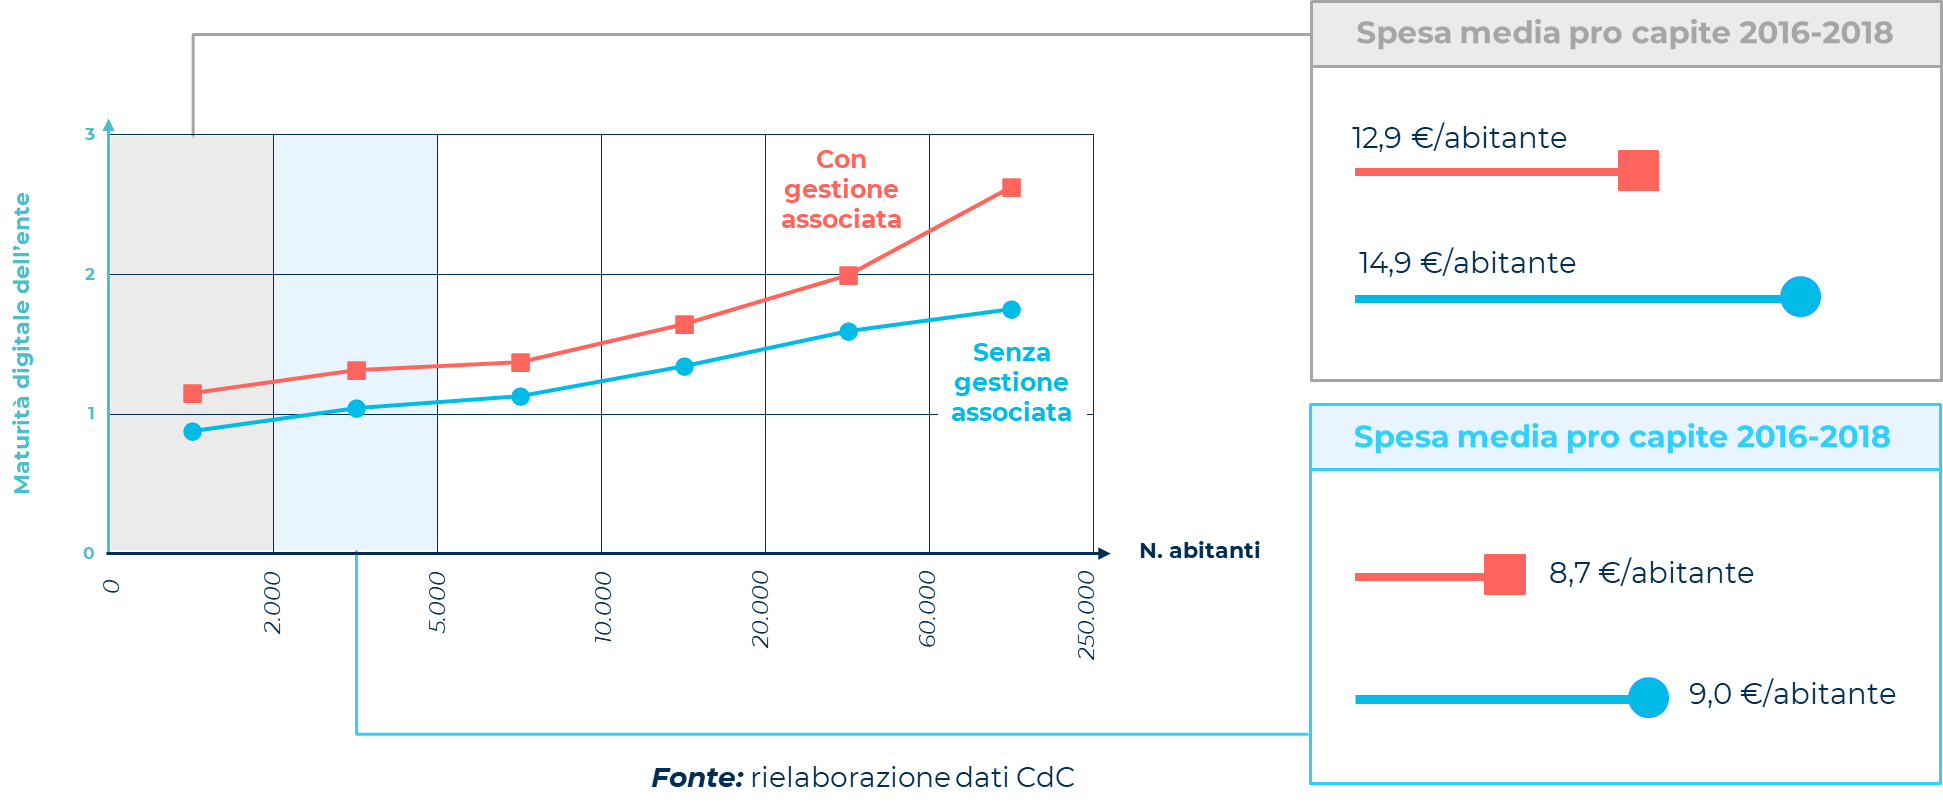 L'immagine illustra in modo schematico come la gestione associata della spesa in ICT nei Comuni di piccole dimensioni rende la spesa pro-capite in soluzioni ICT più efficiente, velocizzando e rendendo sostenibile il processo di trasformazione digitale.